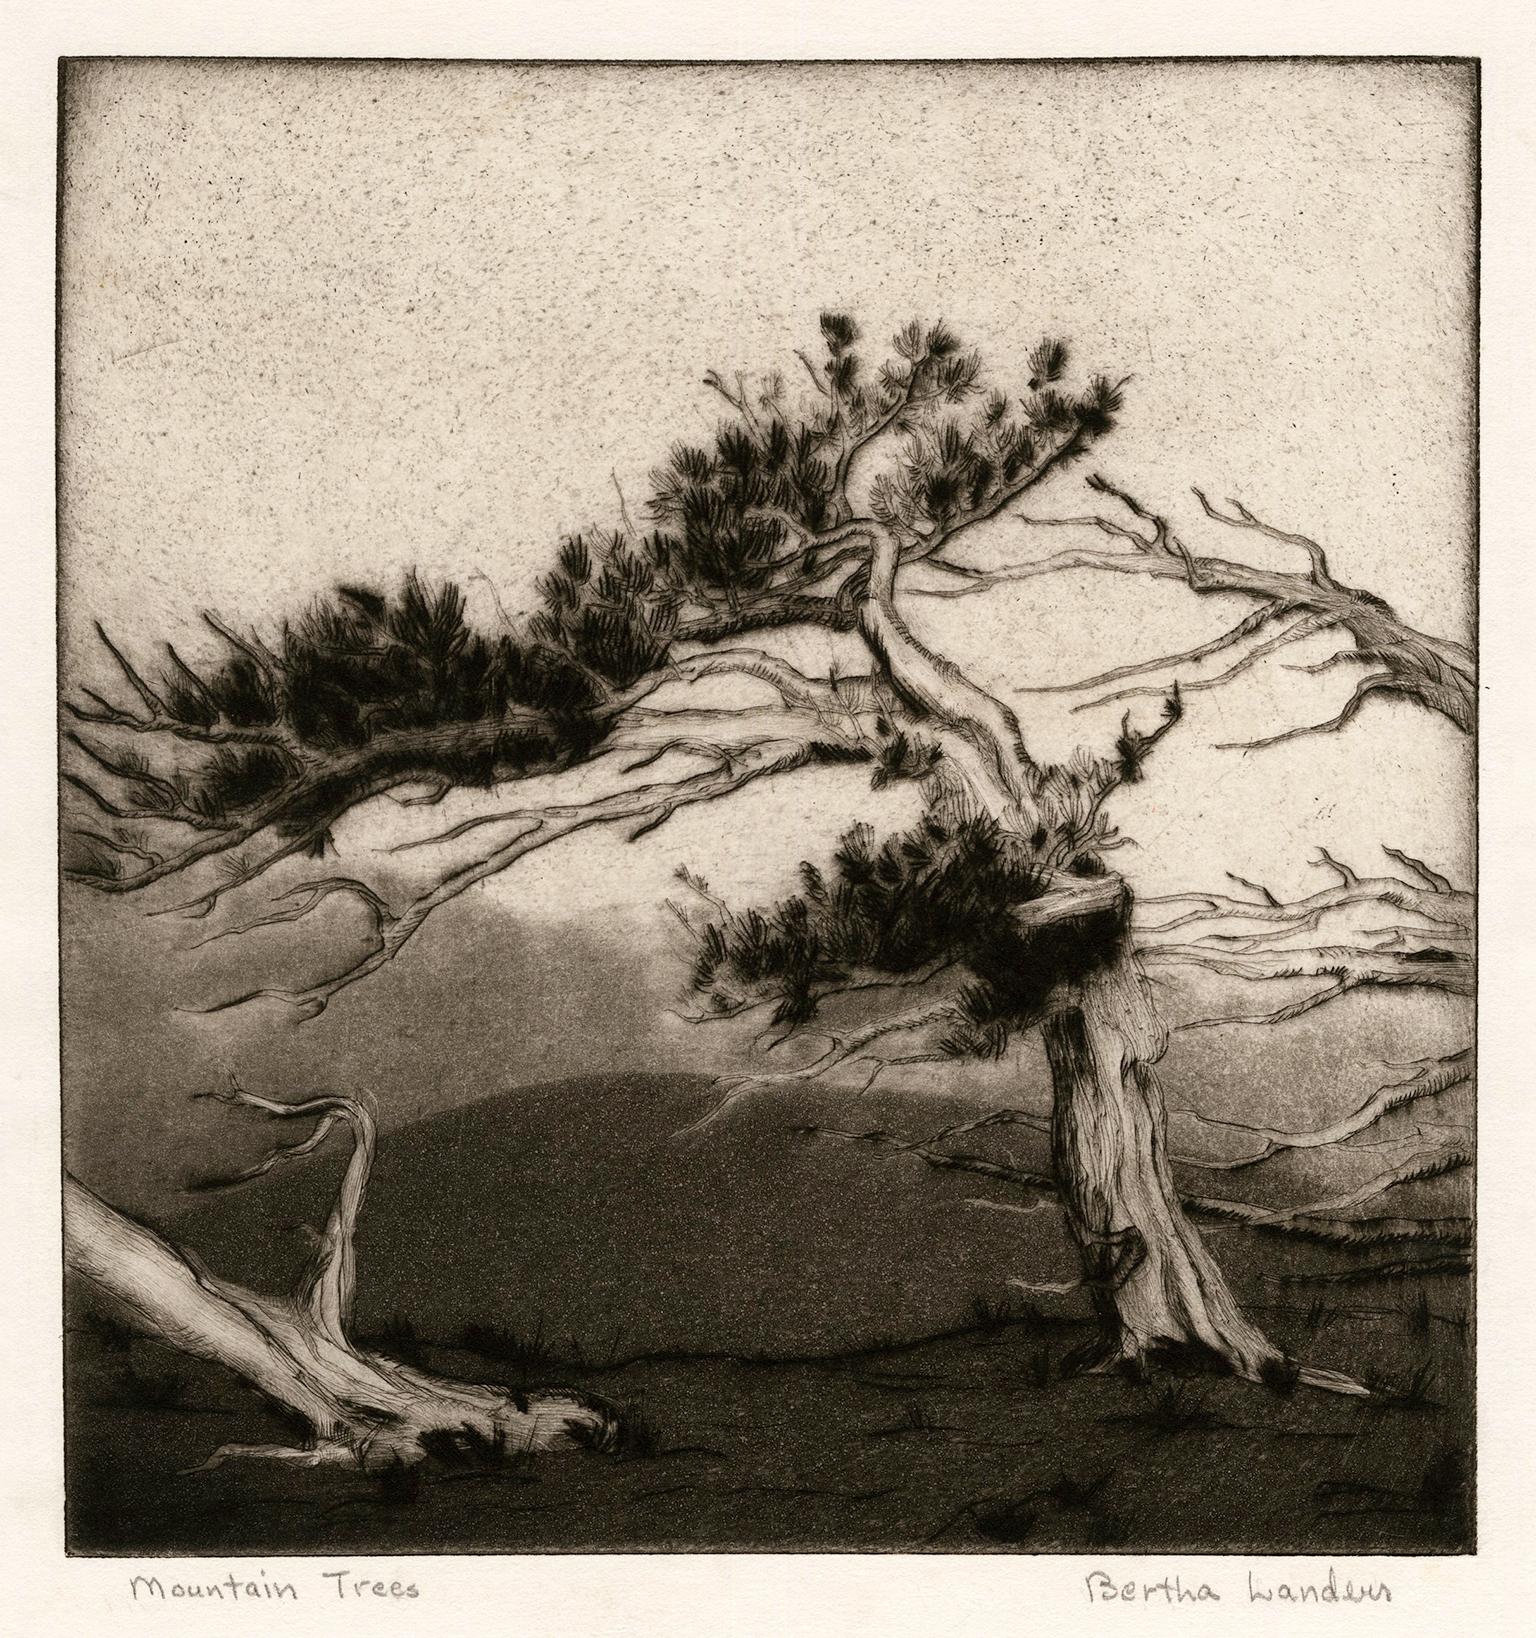 Bertha Landers Landscape Print - 'Mountain Trees' — 1930s Southwestern Regionalism